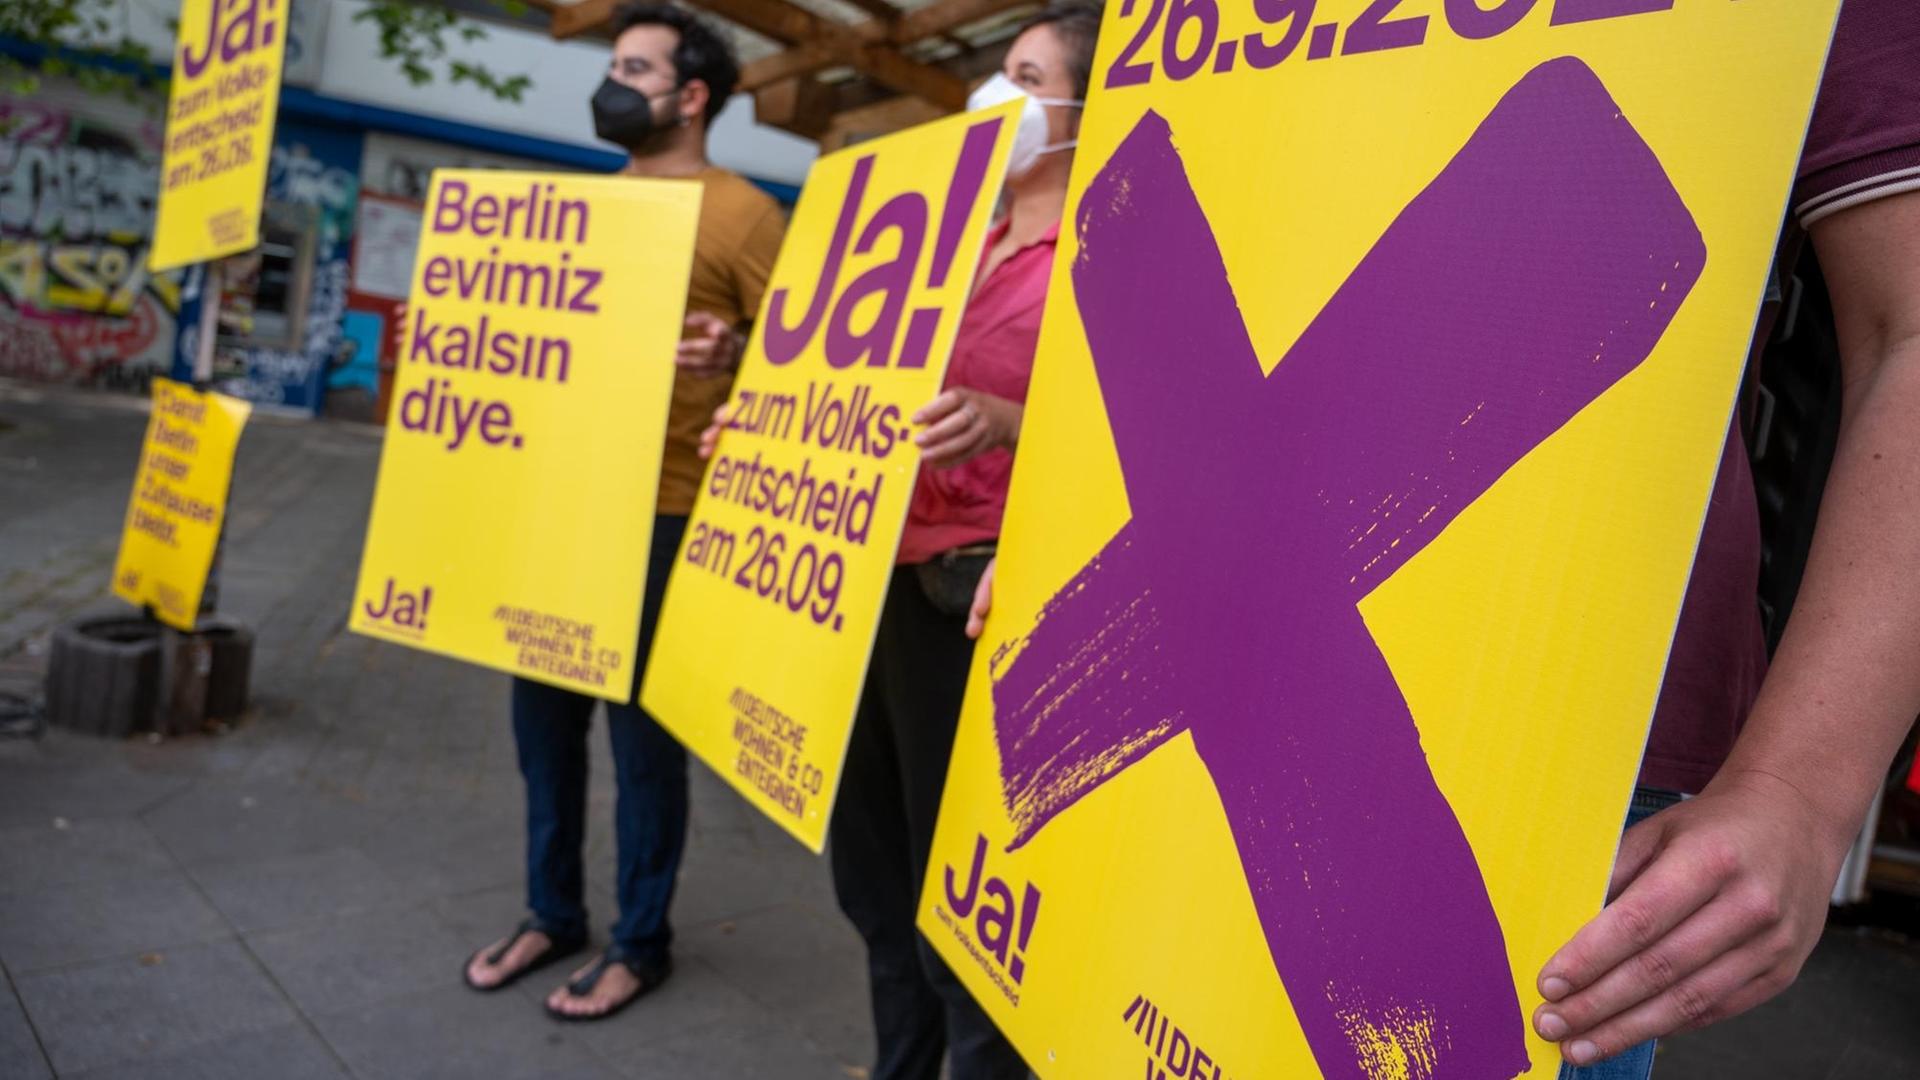 Anhänger der Kampagne "Deutsche Wohnen und Co. enteignen" halten bei einer Veranstaltung Plakate der Kampagne, auf denen für den dazugehörigen Volksentscheid in Berlin geworben wird.